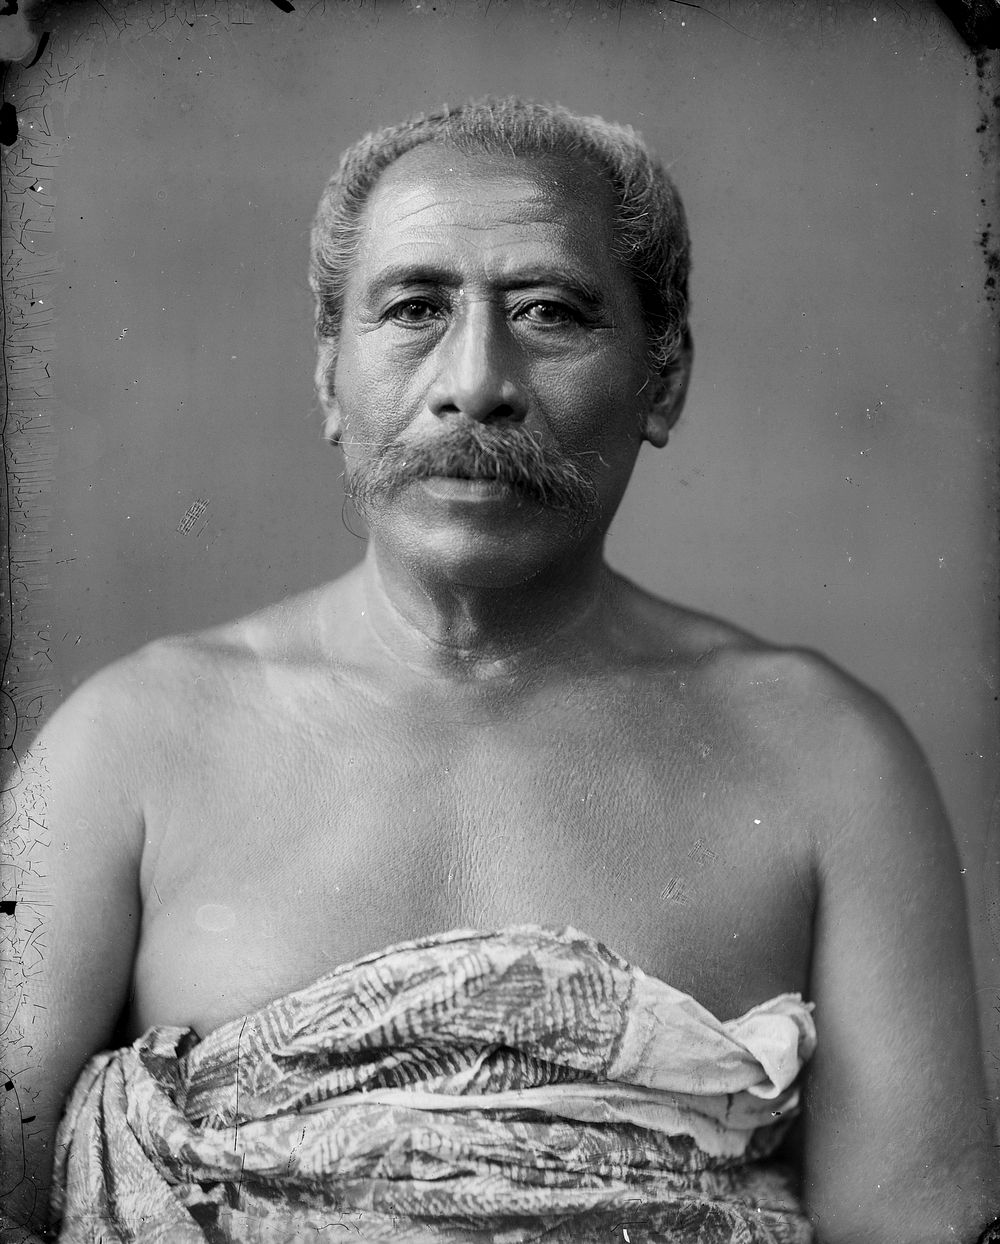 Seumanutafa Pogai, Matai (High Chief) of Apia (1890-1910) by Thomas Andrew.